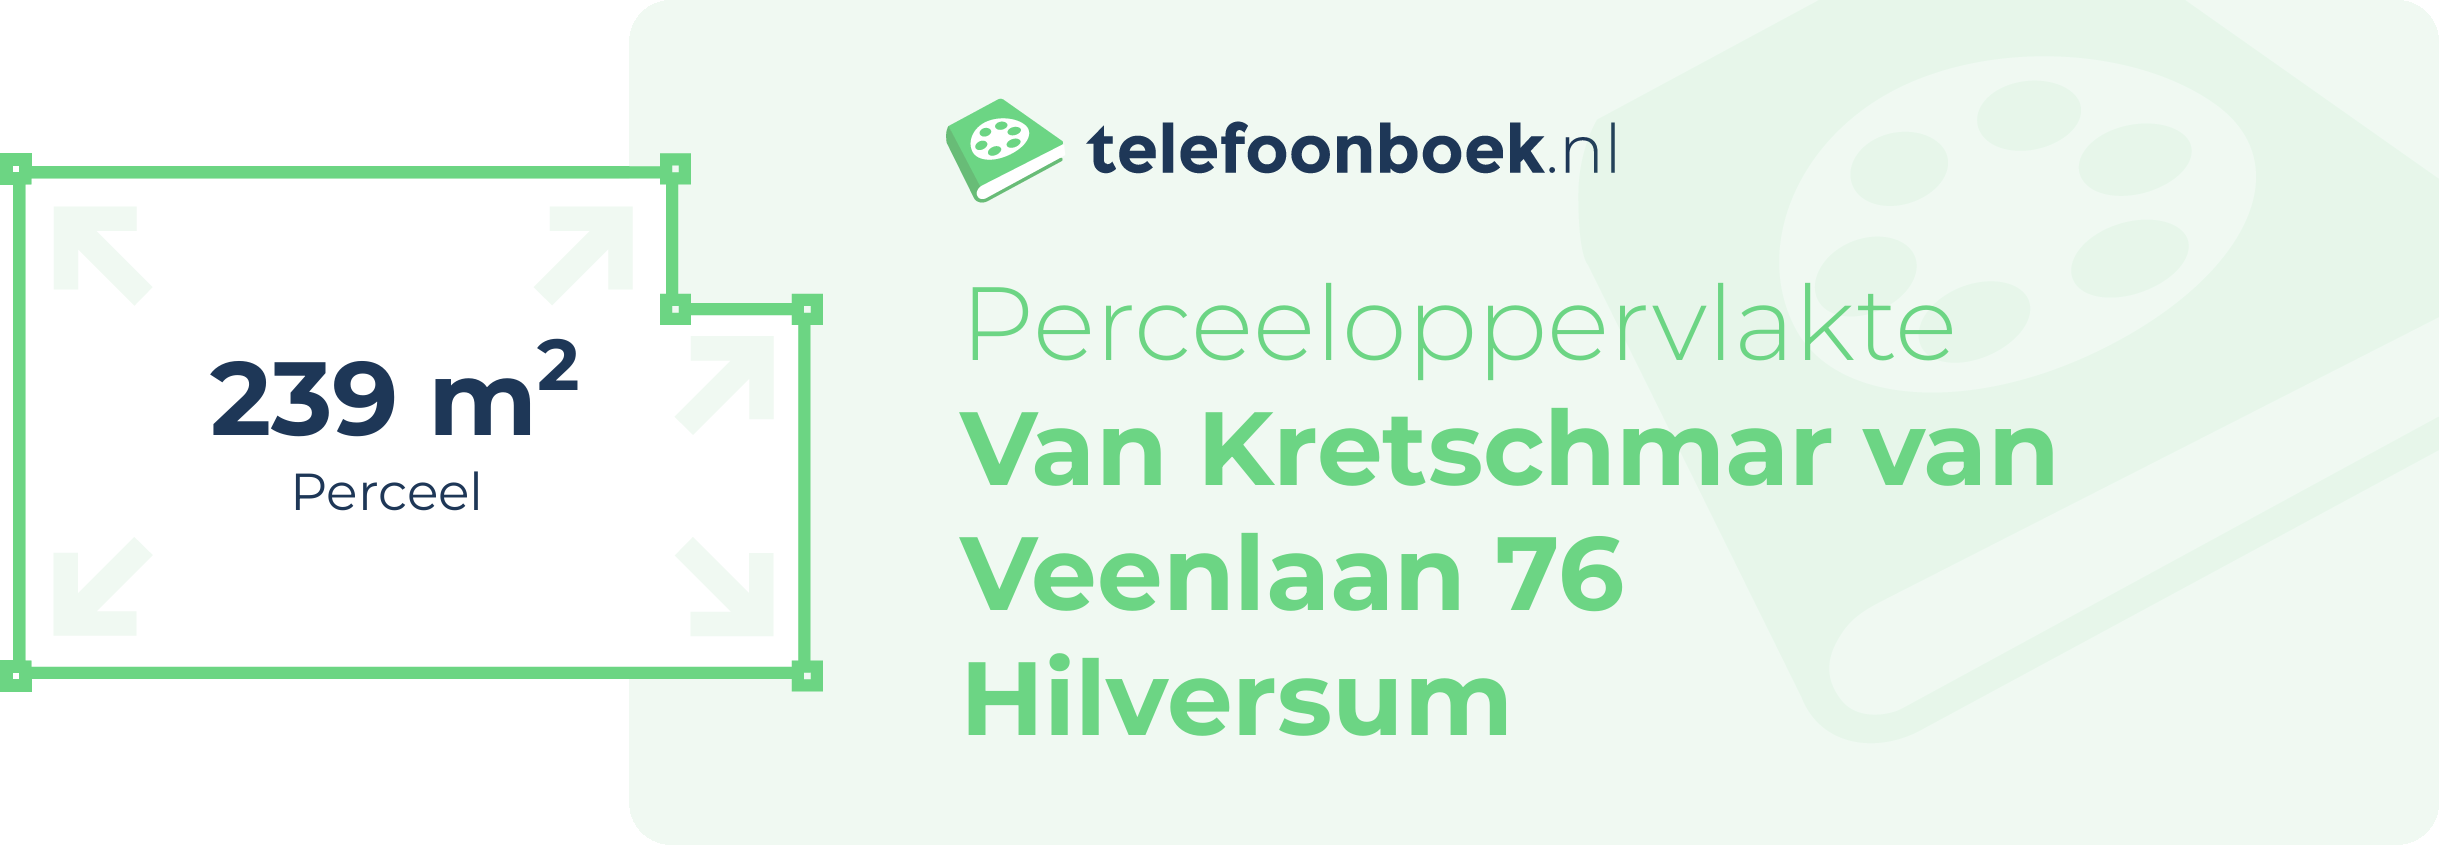 Perceeloppervlakte Van Kretschmar Van Veenlaan 76 Hilversum